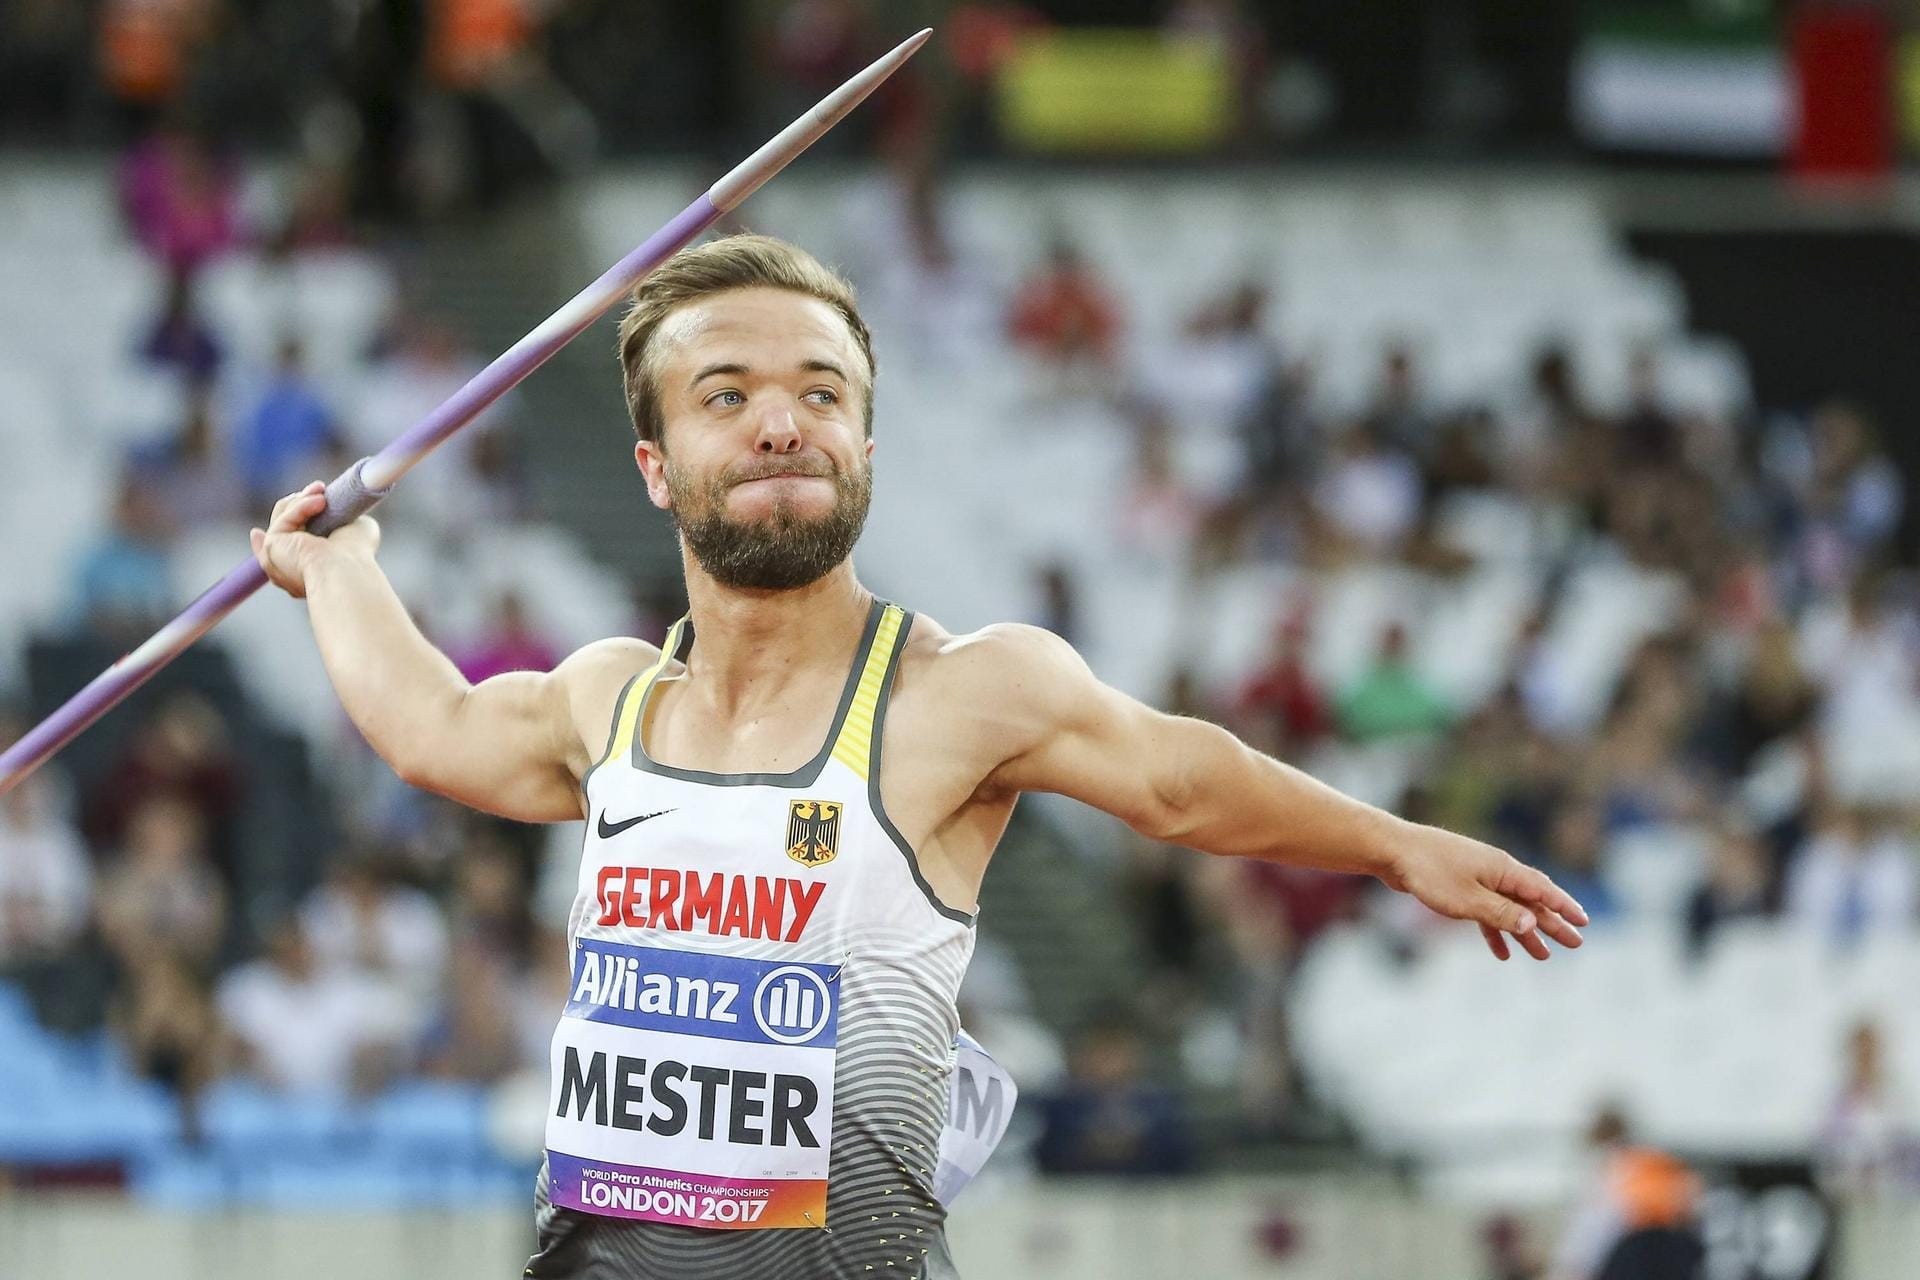 Mathias Mester: Mester ist mehrfacher Weltmeister im Speer- und Diskuswerfen sowie im Kugelstoßen. Neben seiner Sportkarriere arbeitet Mester als Moderator und Schauspieler.